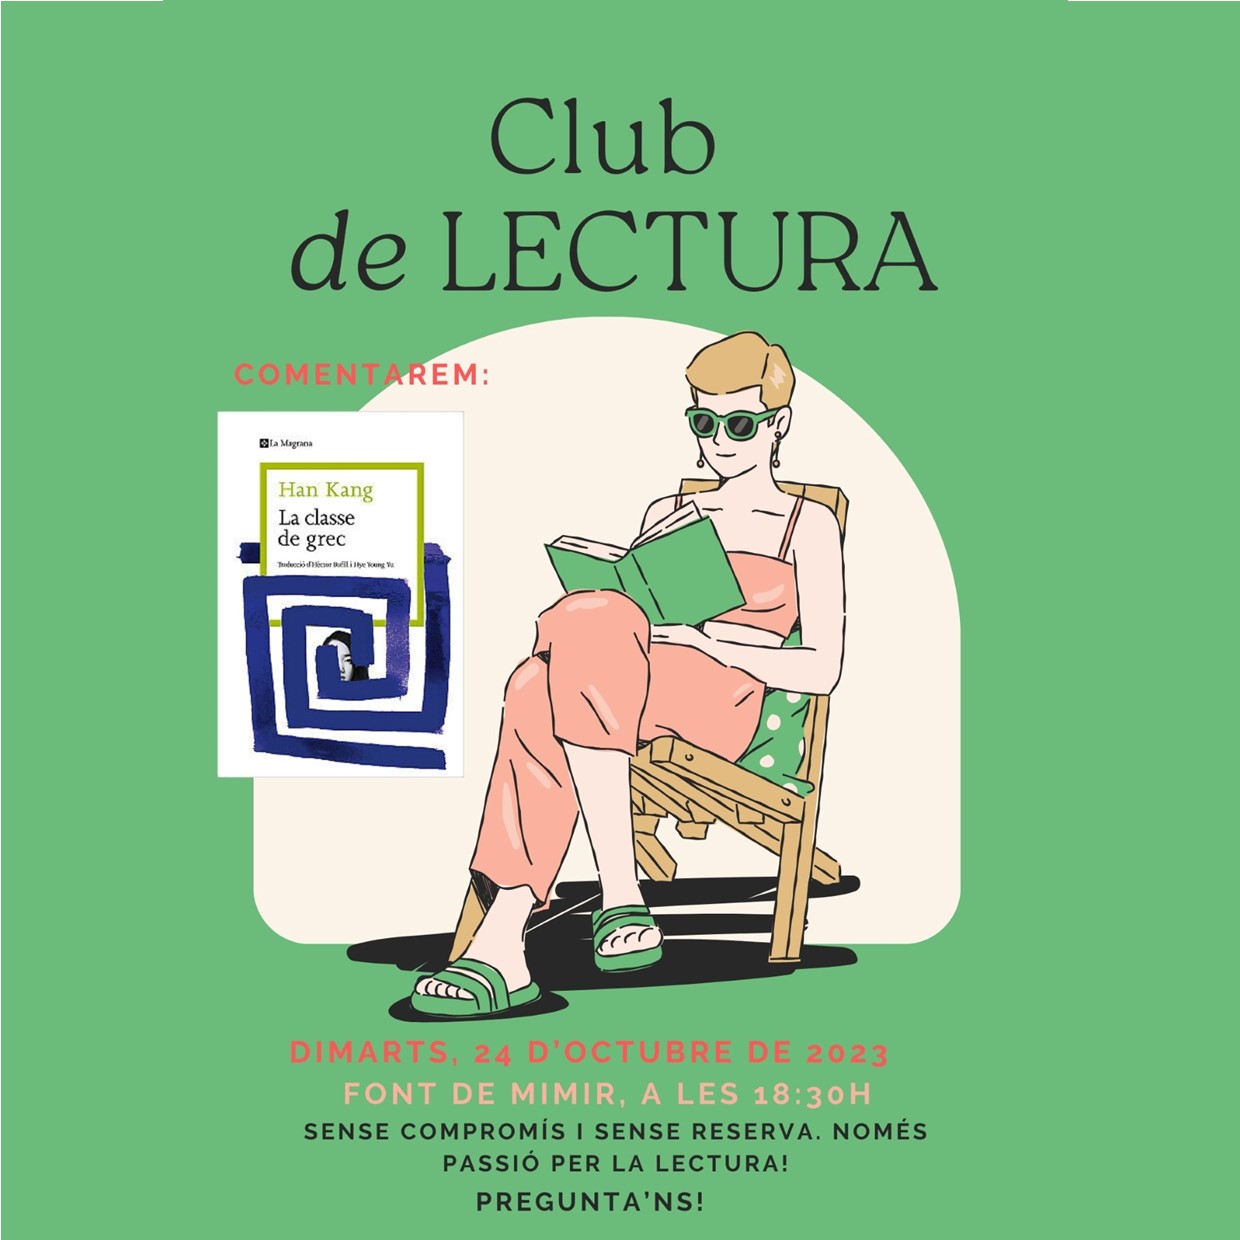 CLUBS DE LECTURA